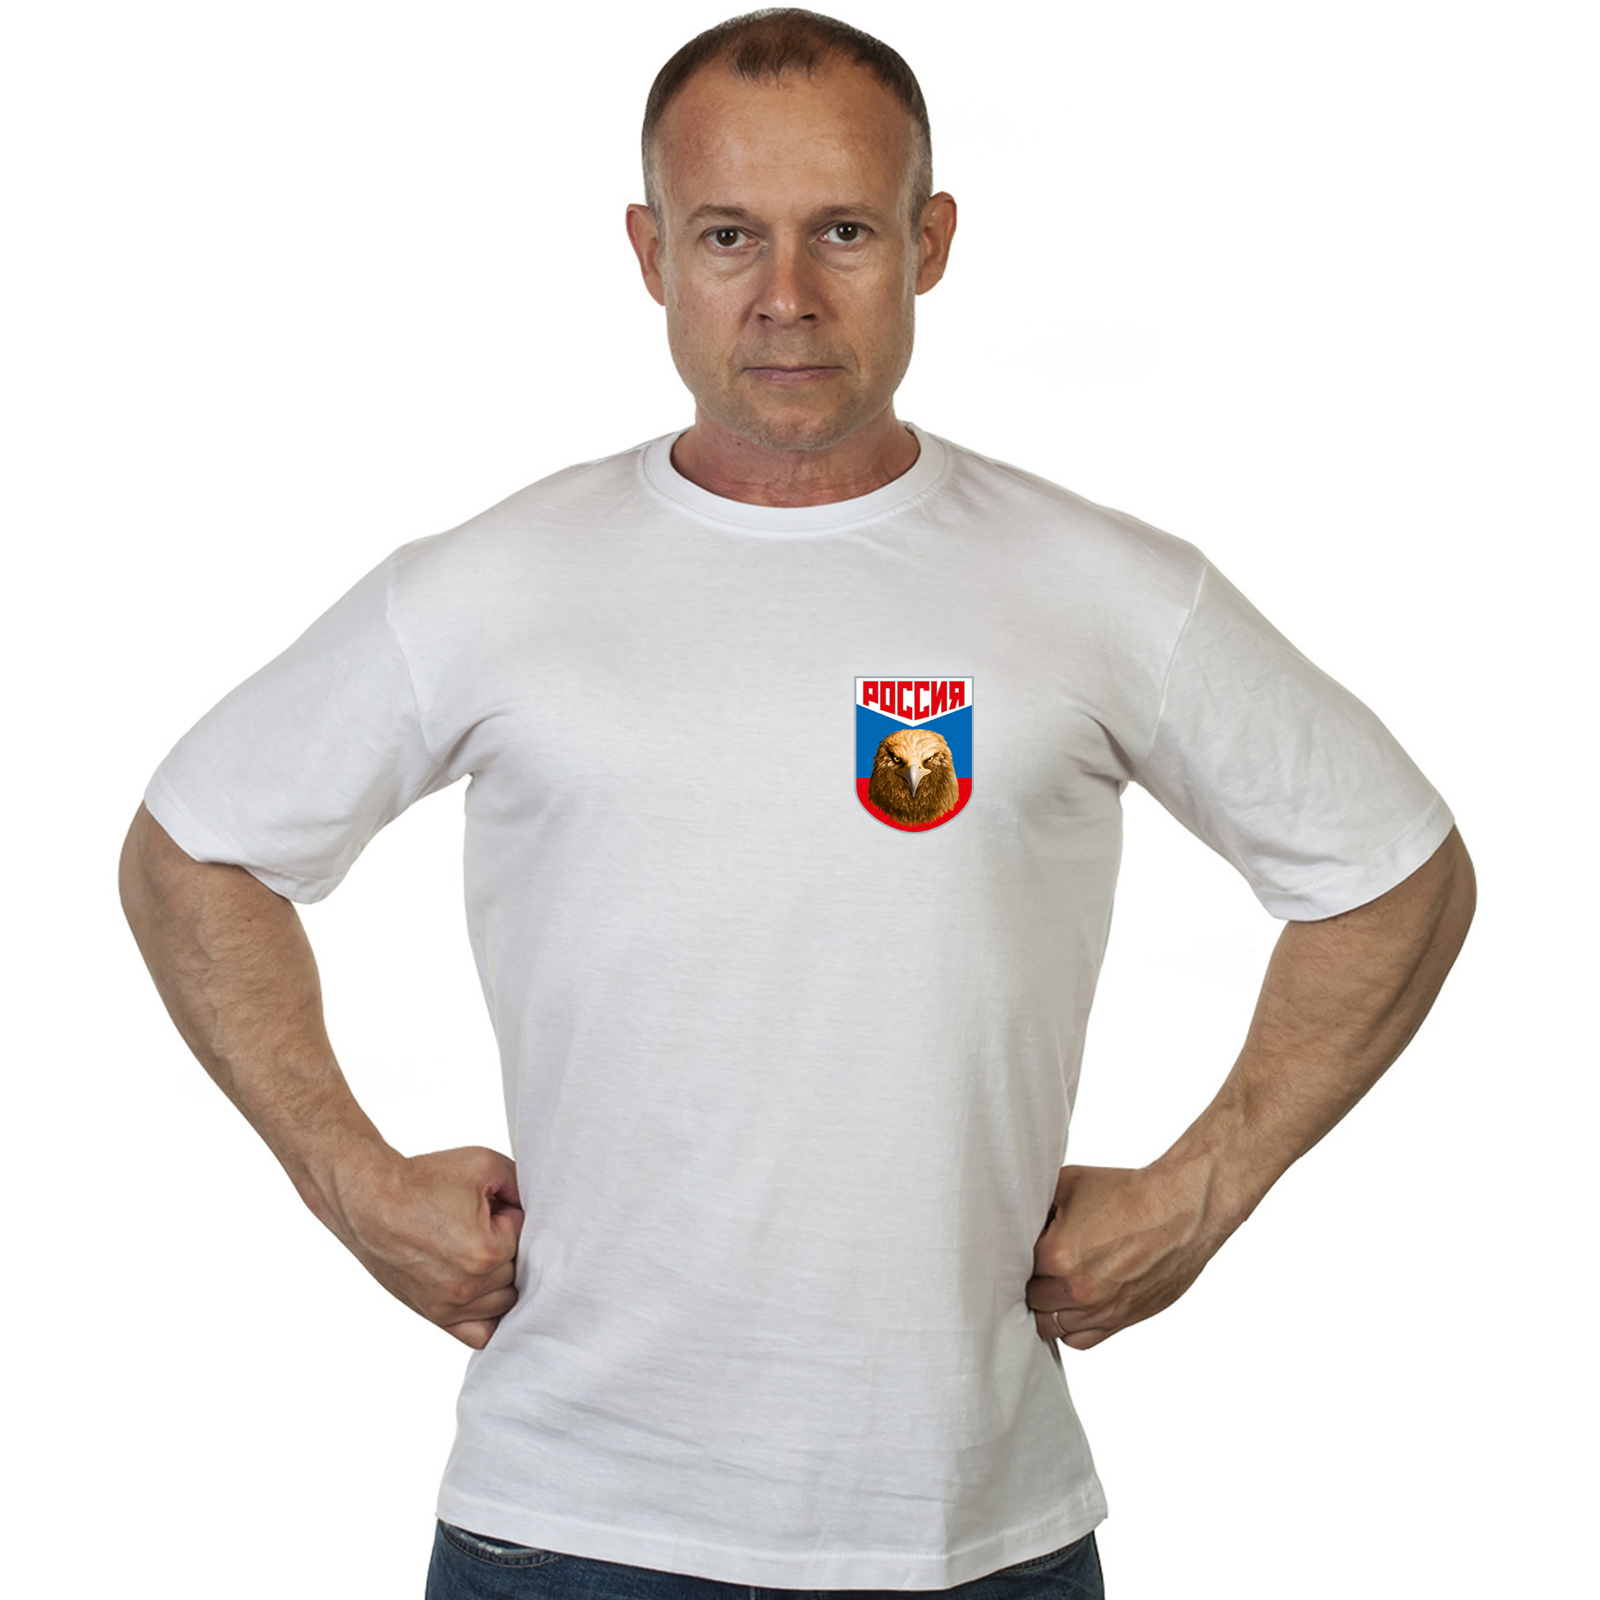 Красная футболка "Россия" с термотрансфером орла 